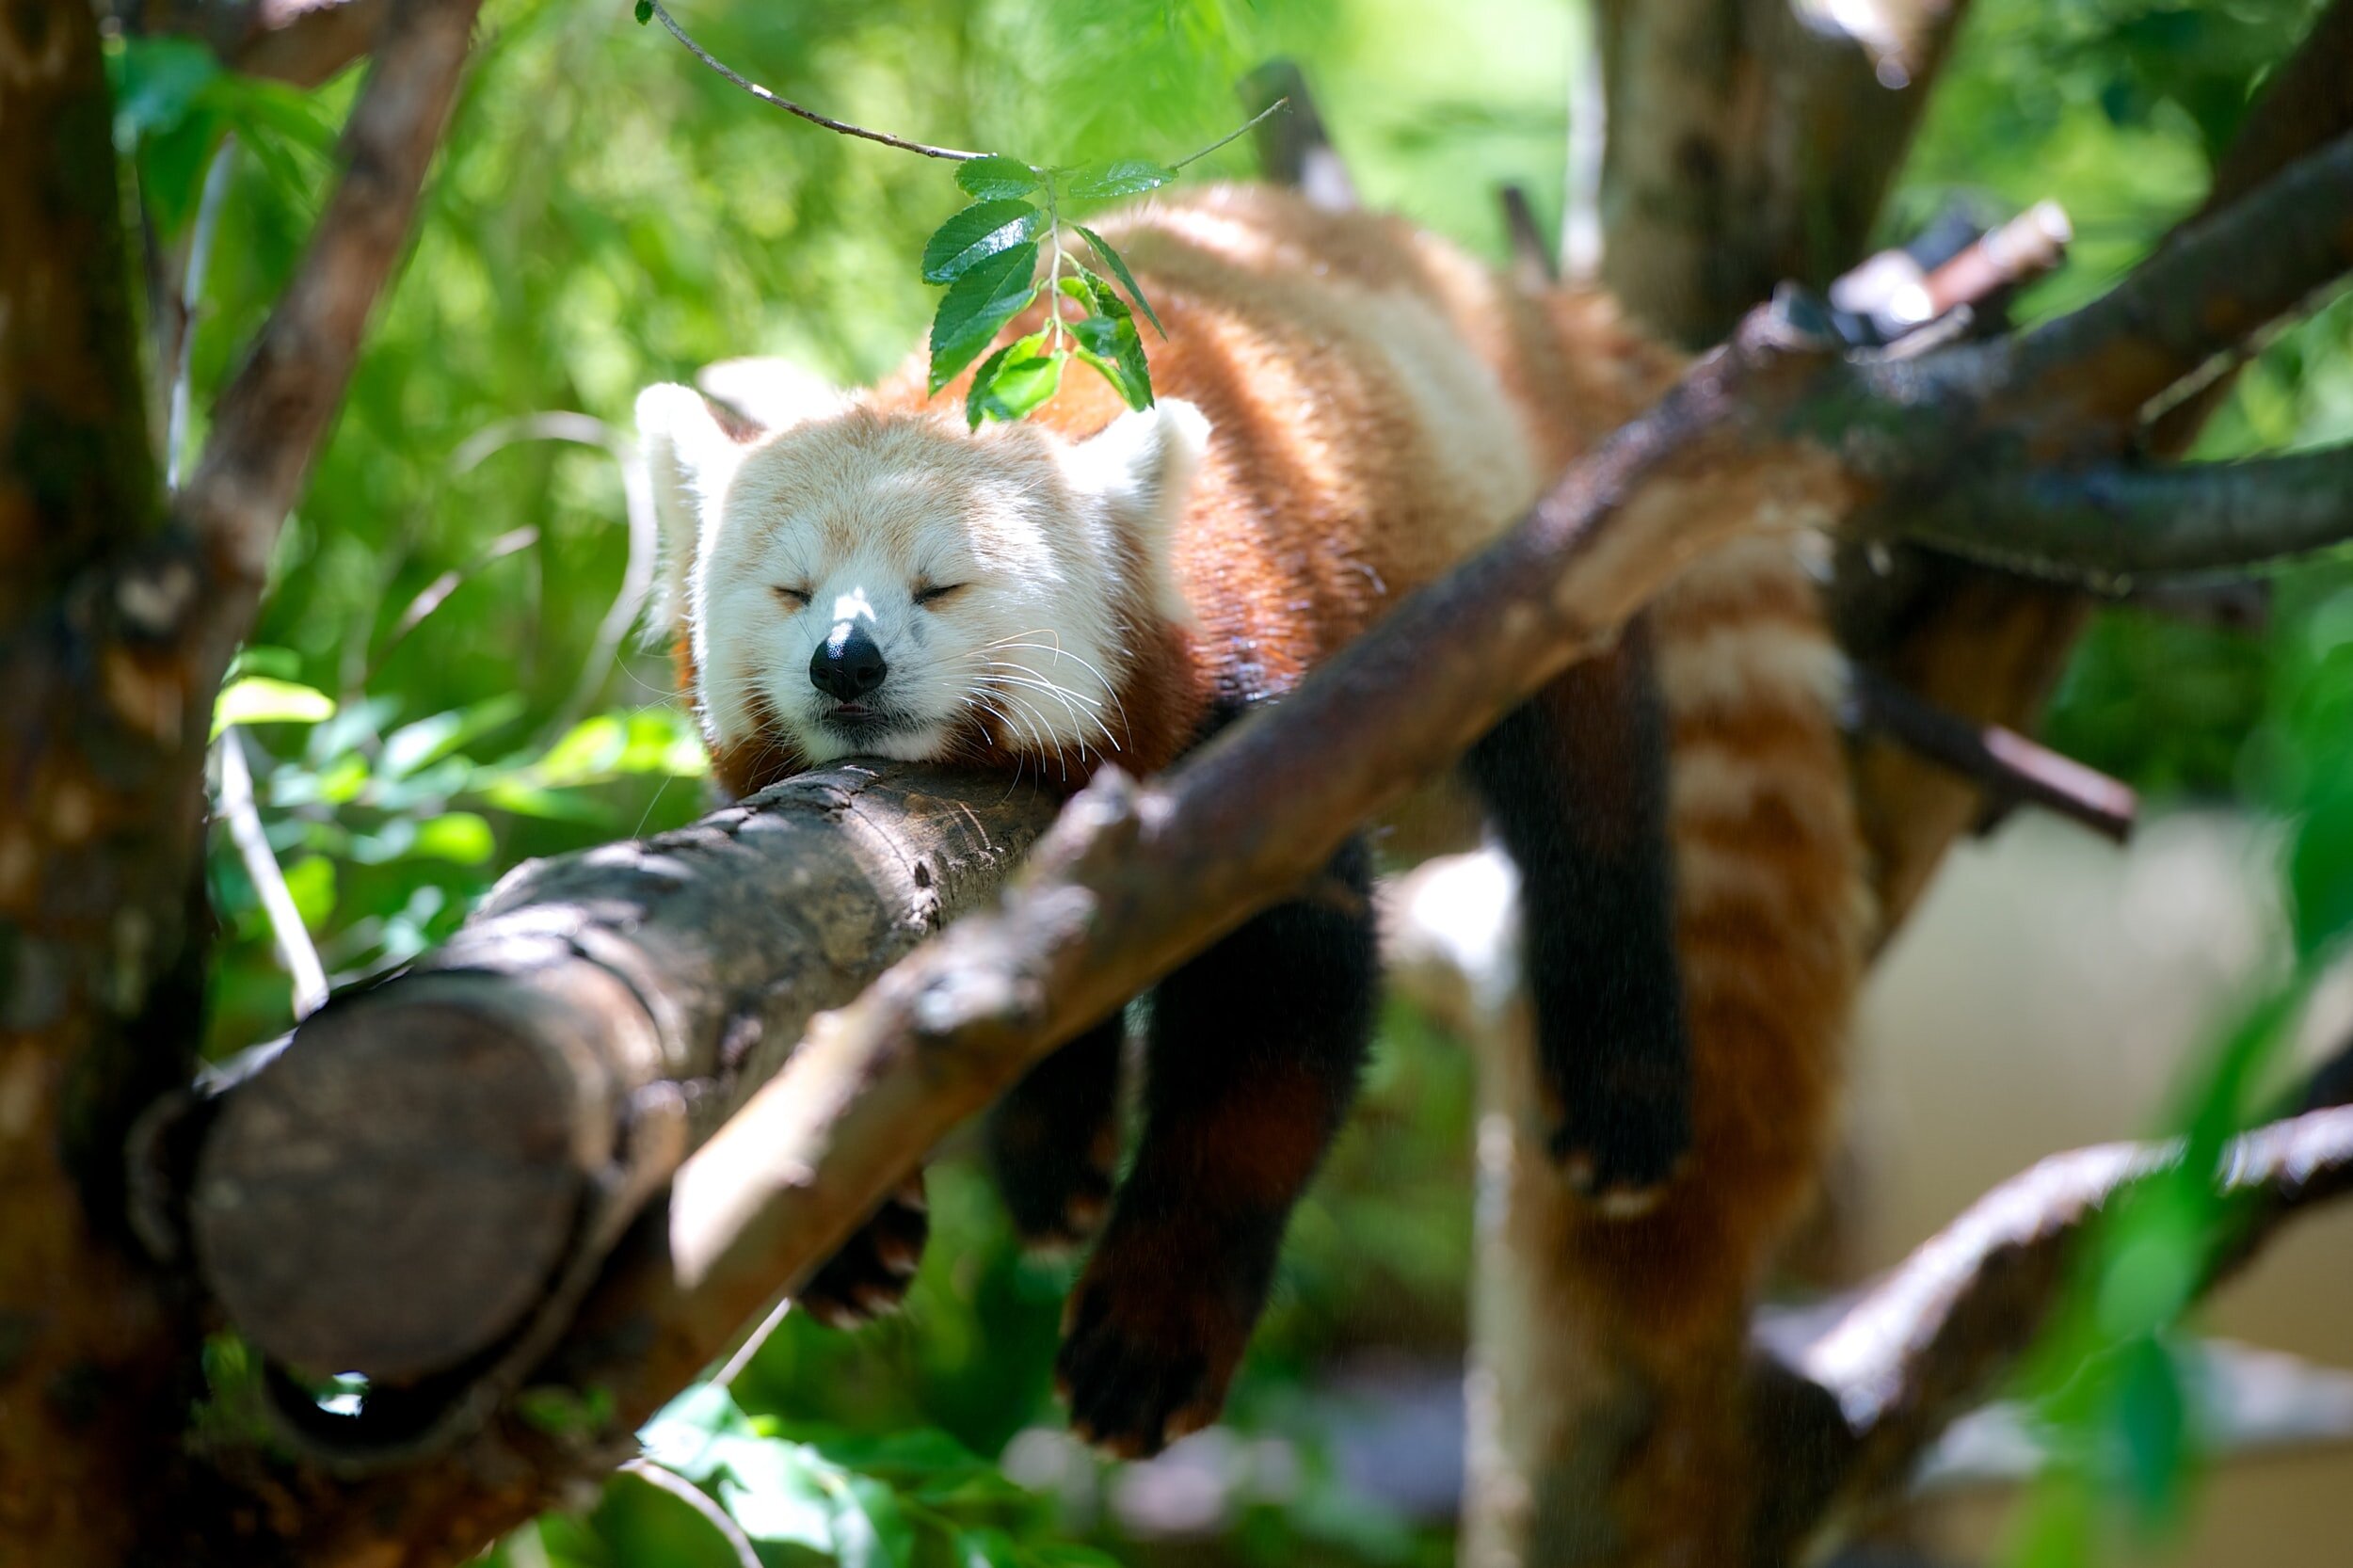 So lovely Red Pandas…